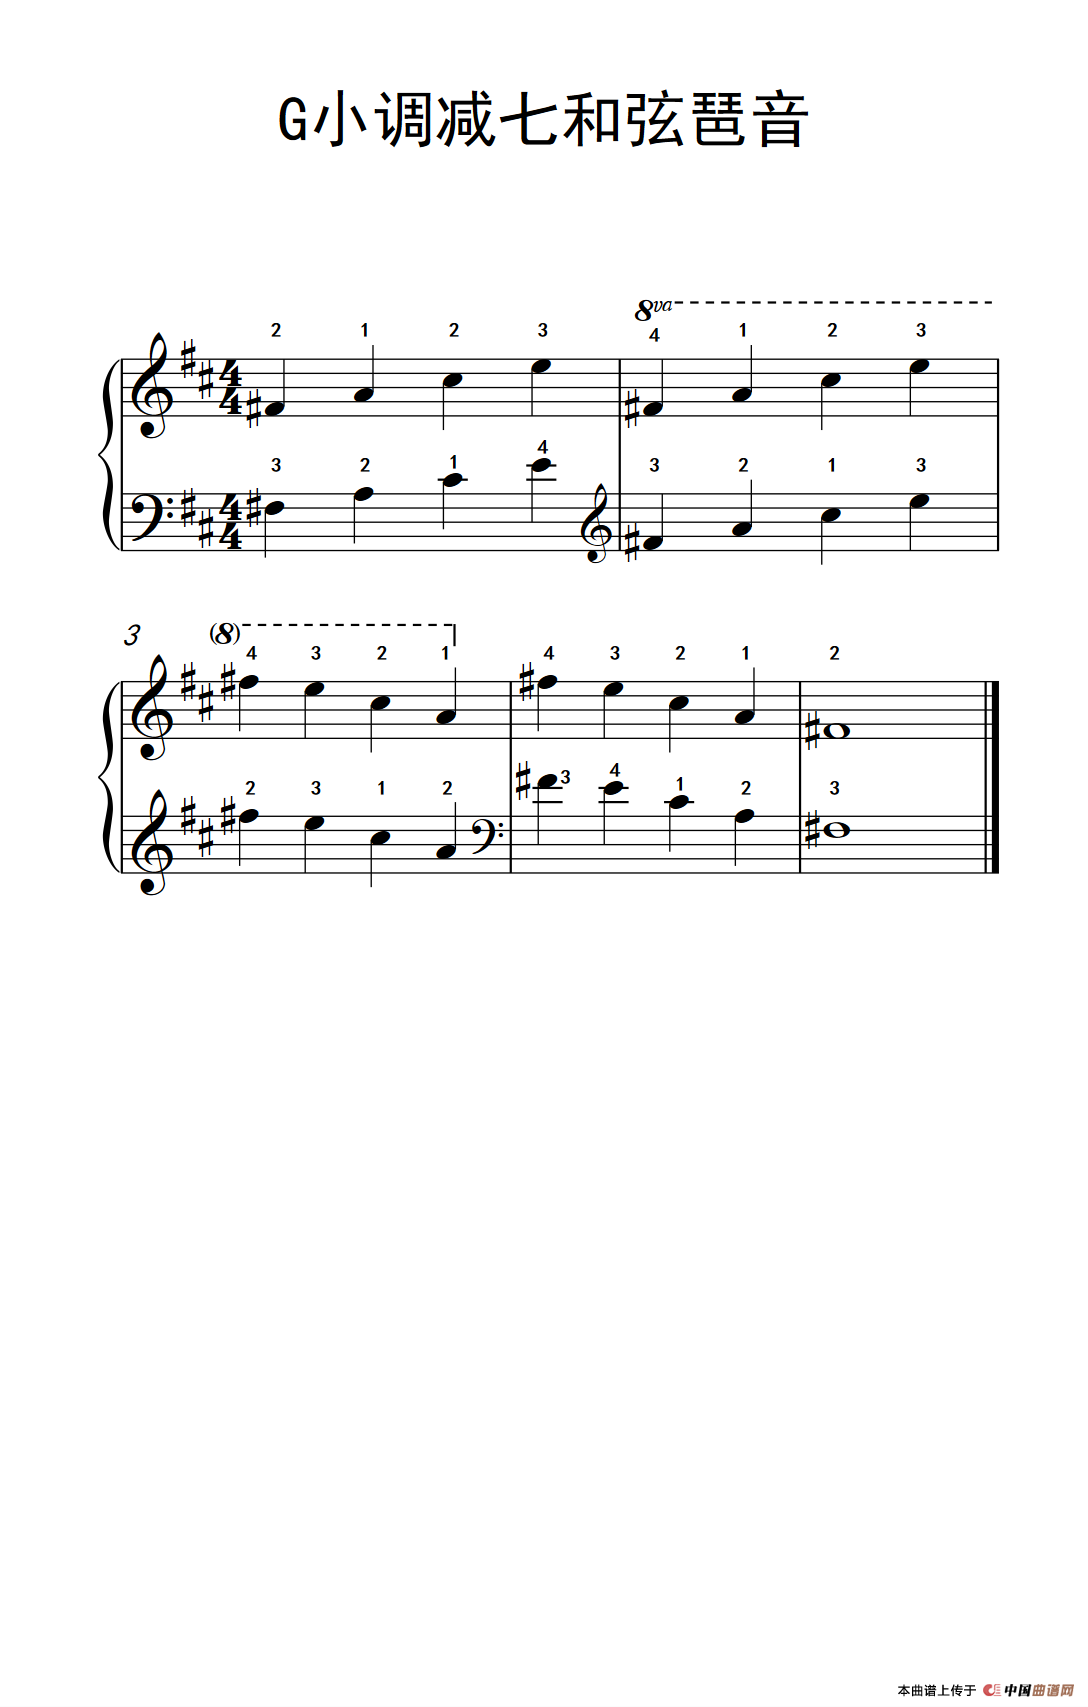 《G小调减七和弦琶音》钢琴曲谱图分享